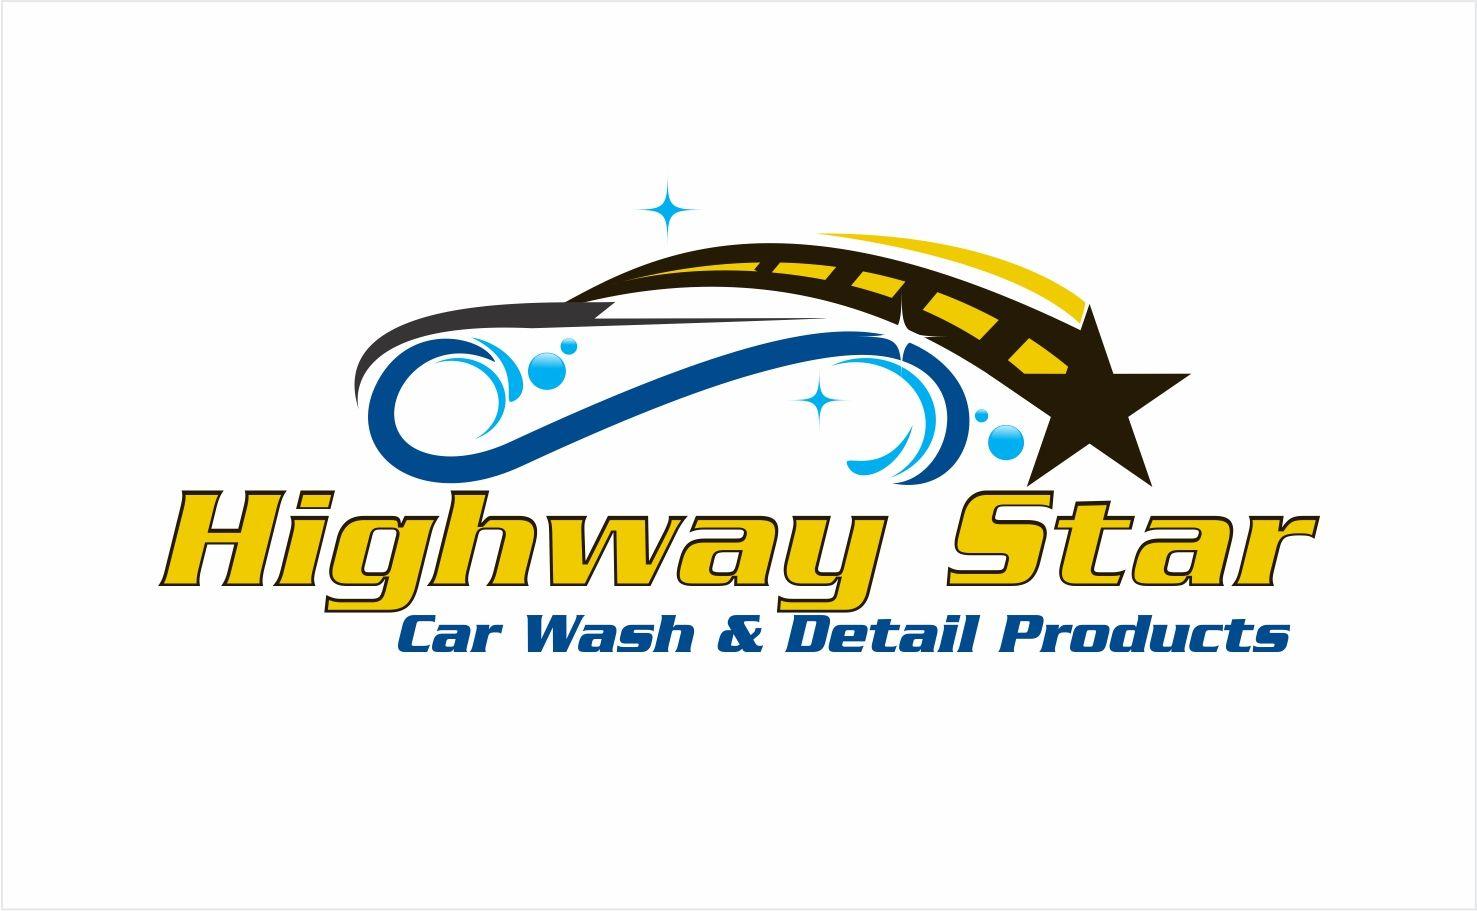 Highway Logo - Elegant, Playful, Manufacturer Logo Design for Highway Star Car Wash